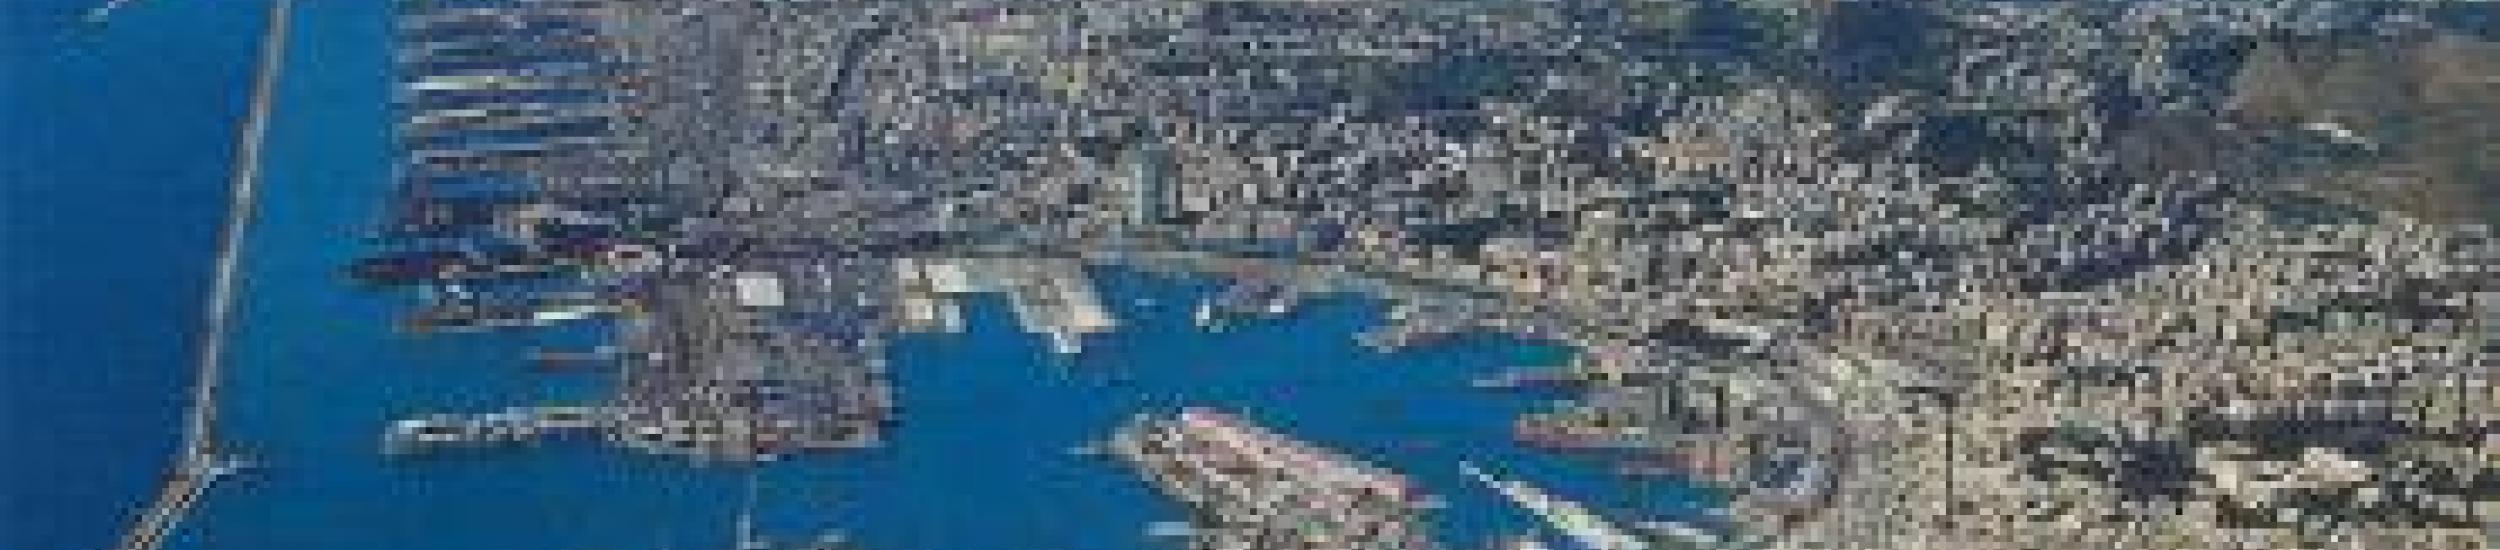 News: Genova e le trasformazioni della costa metropolitana, lunedì 13 presentazione di studio e video